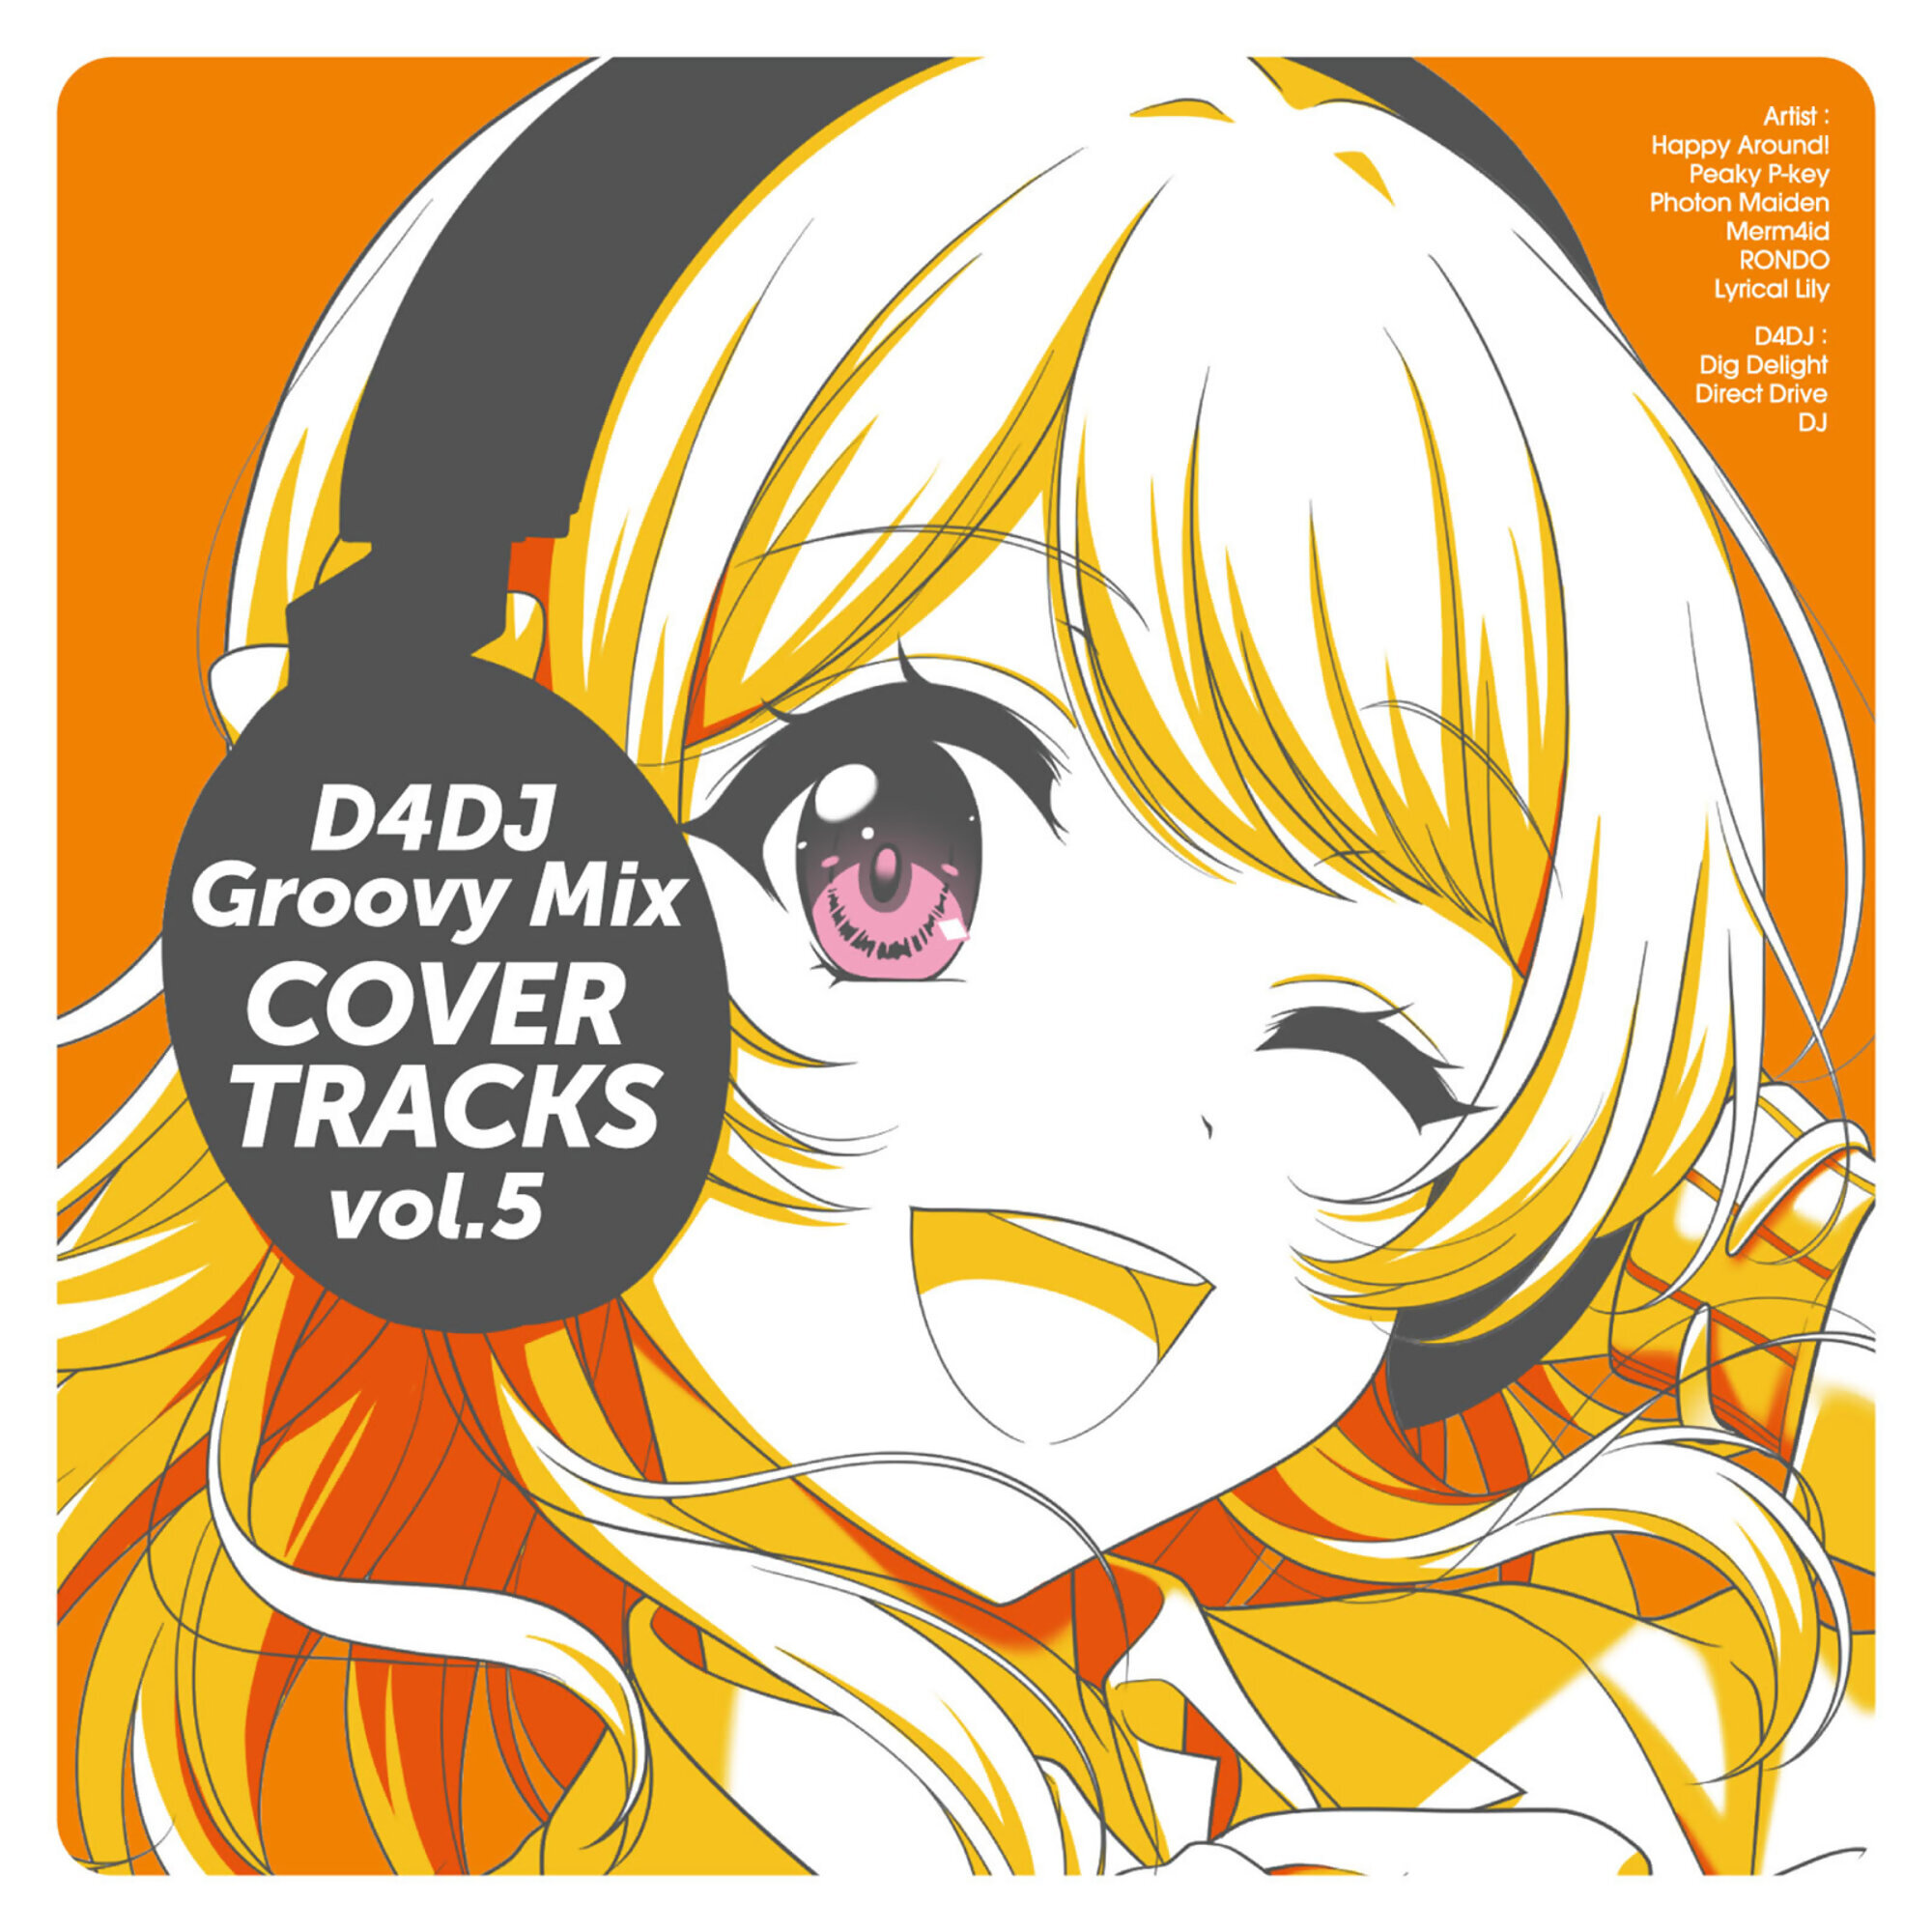 D4DJ Groovy Mix Cover Tracks Vol.5 | Dig Delight Direct Drive DJ Wiki |  Fandom